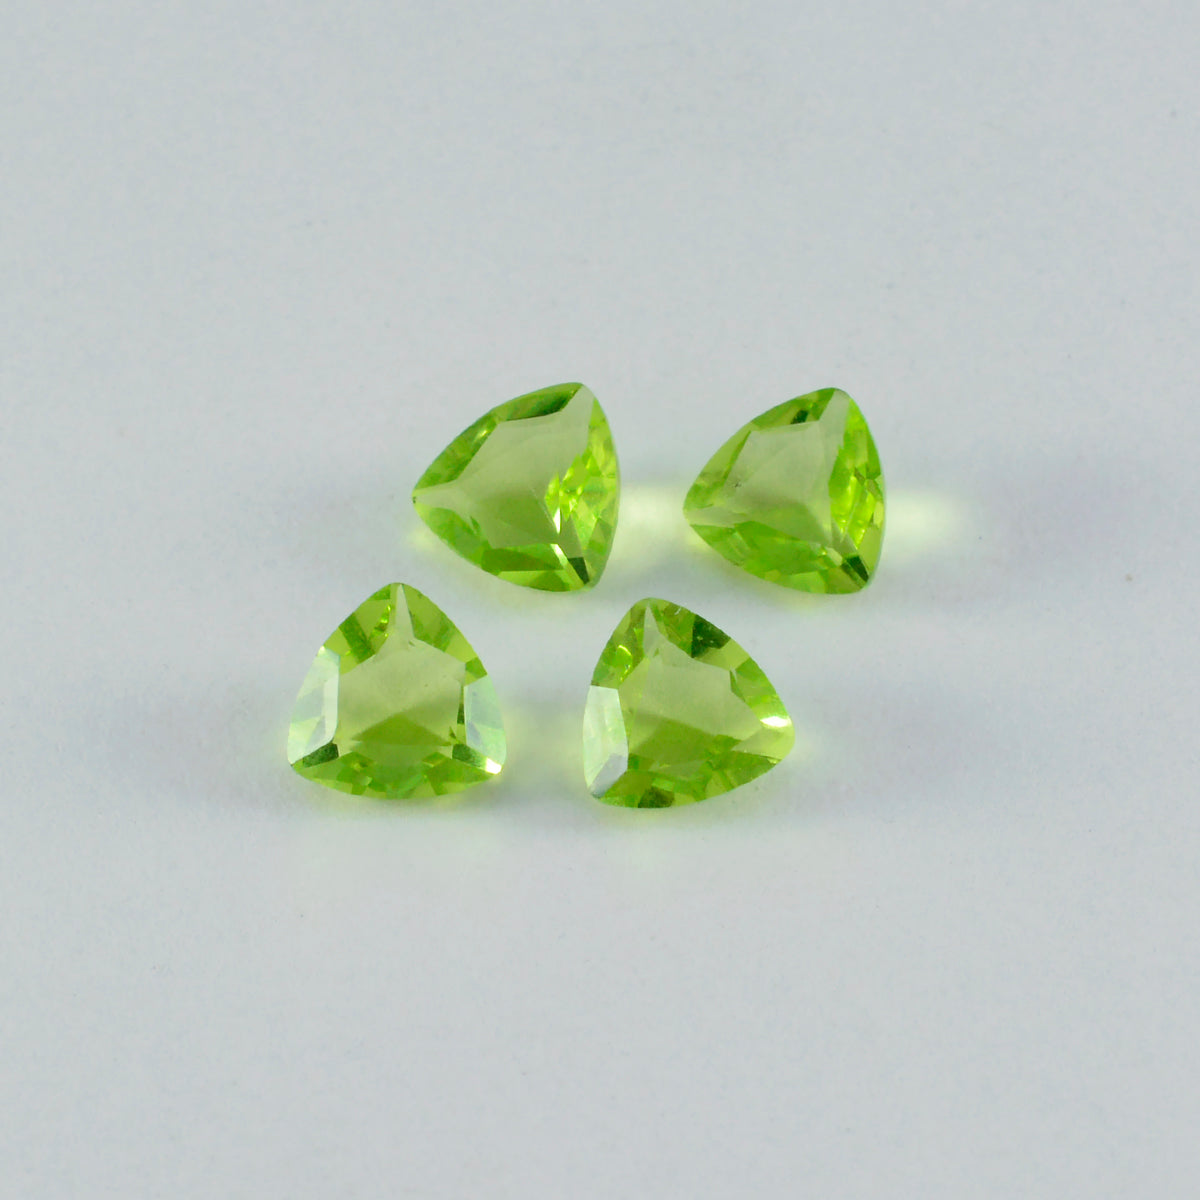 riyogems 1шт зеленый перидот cz граненый 8x8 мм форма триллиона качественный свободный драгоценный камень